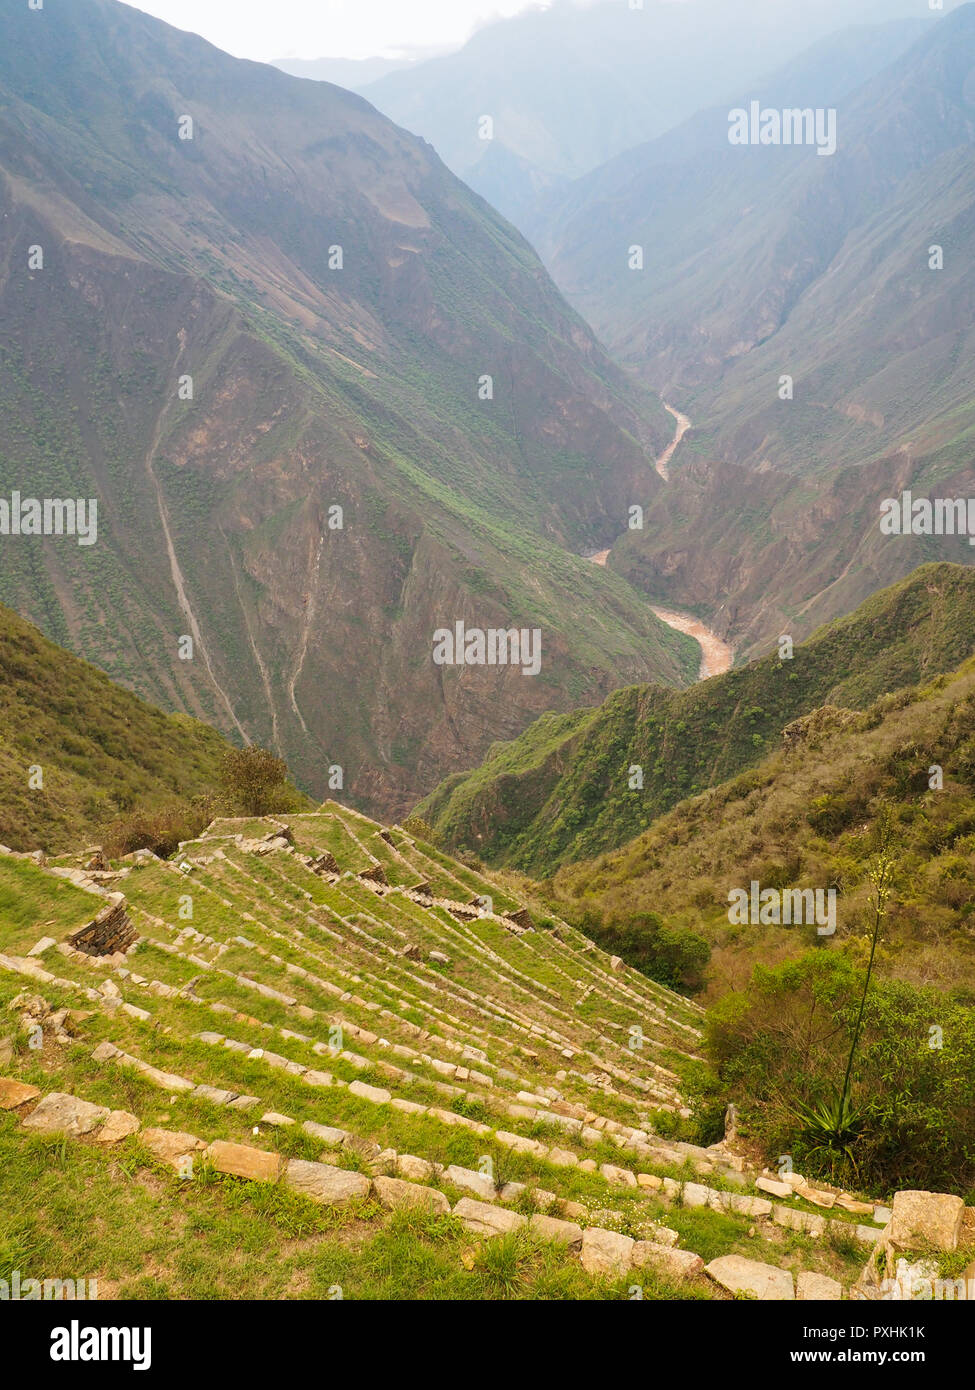 Mit Blick auf thevalley und Terrassen von Choquequirao Inka Ort Ruine, Peru Stockfoto